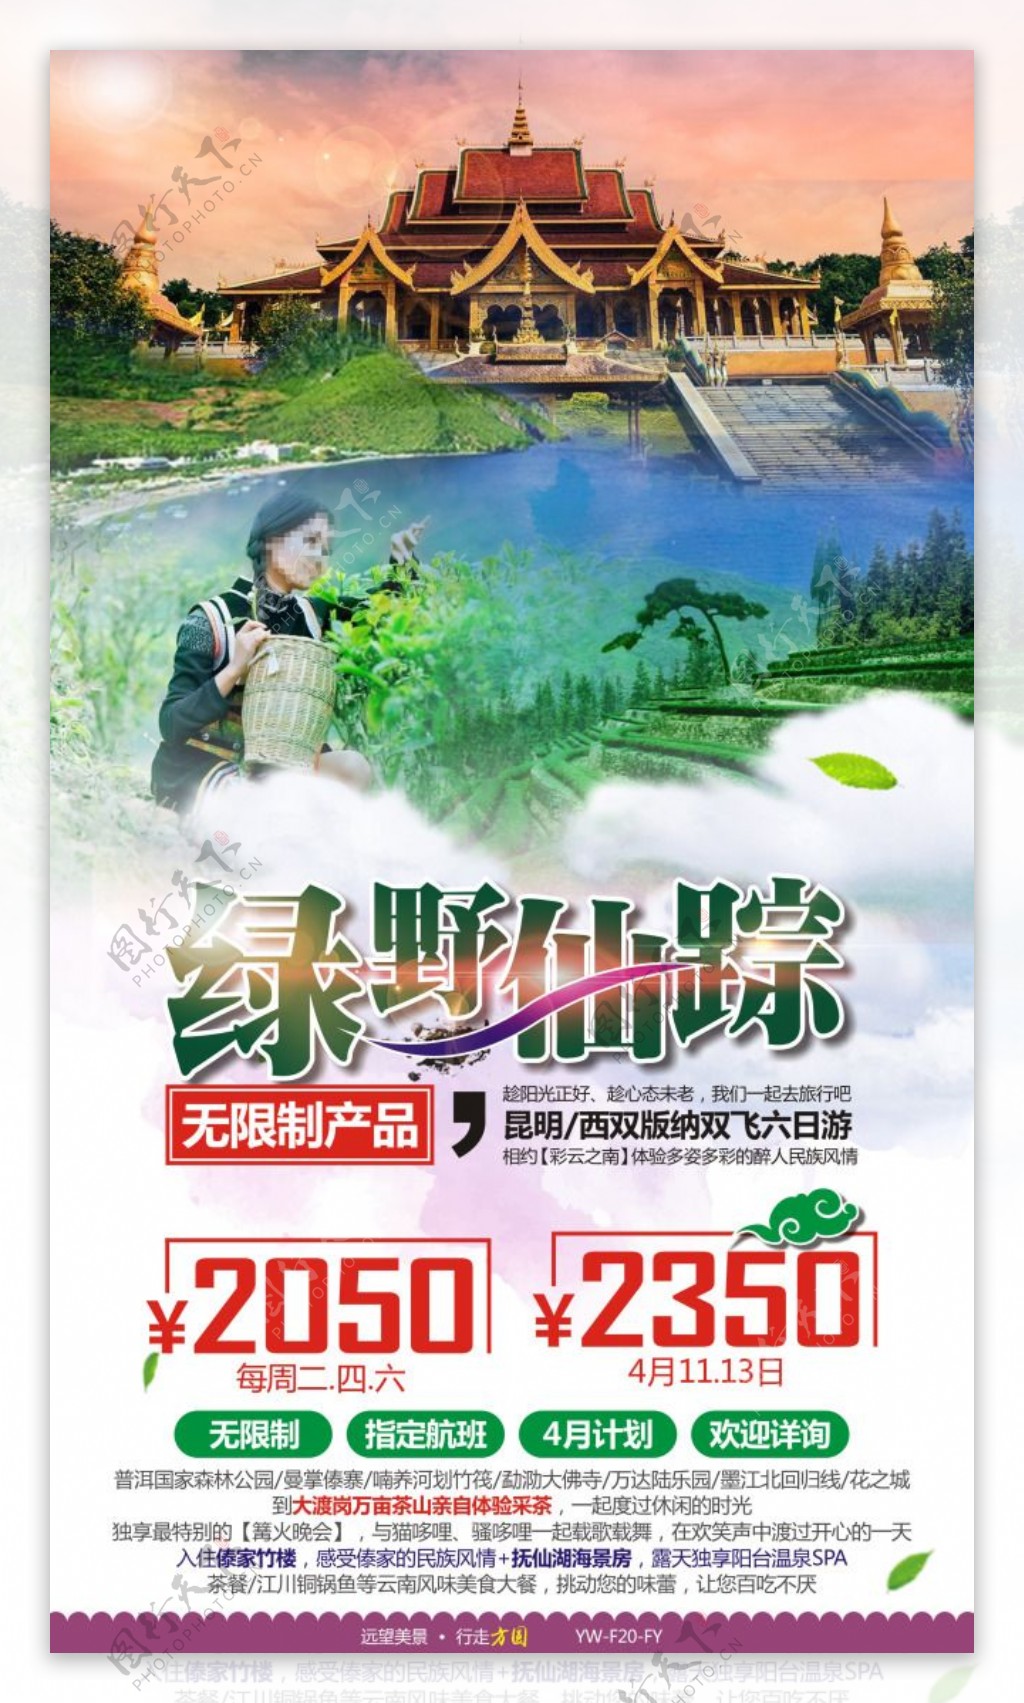 绿野仙踪云南版纳旅游广告宣传图